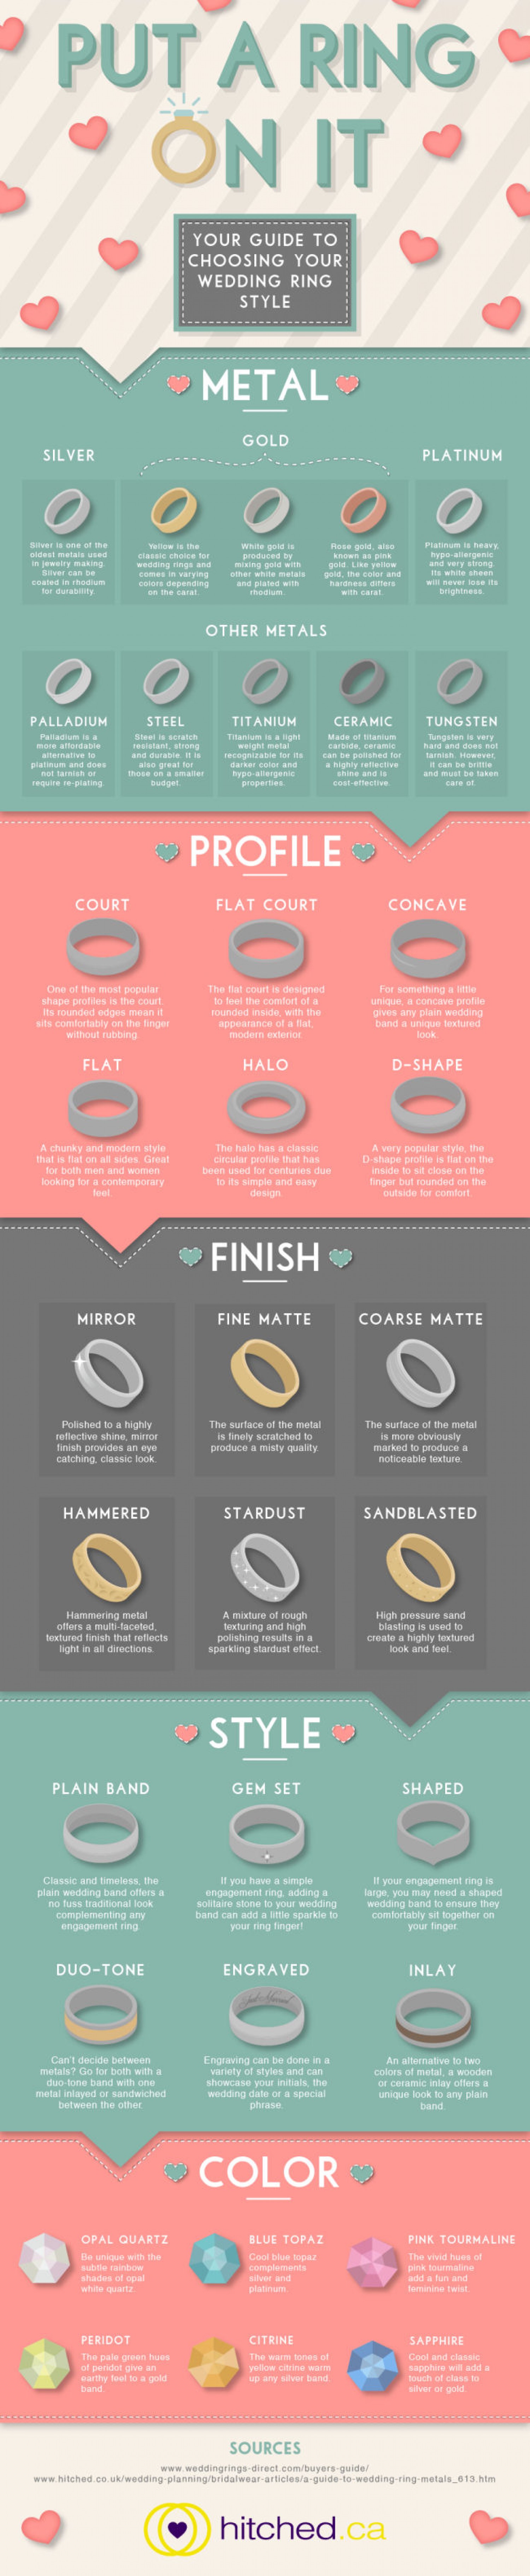 Picking Your Wedding Rings